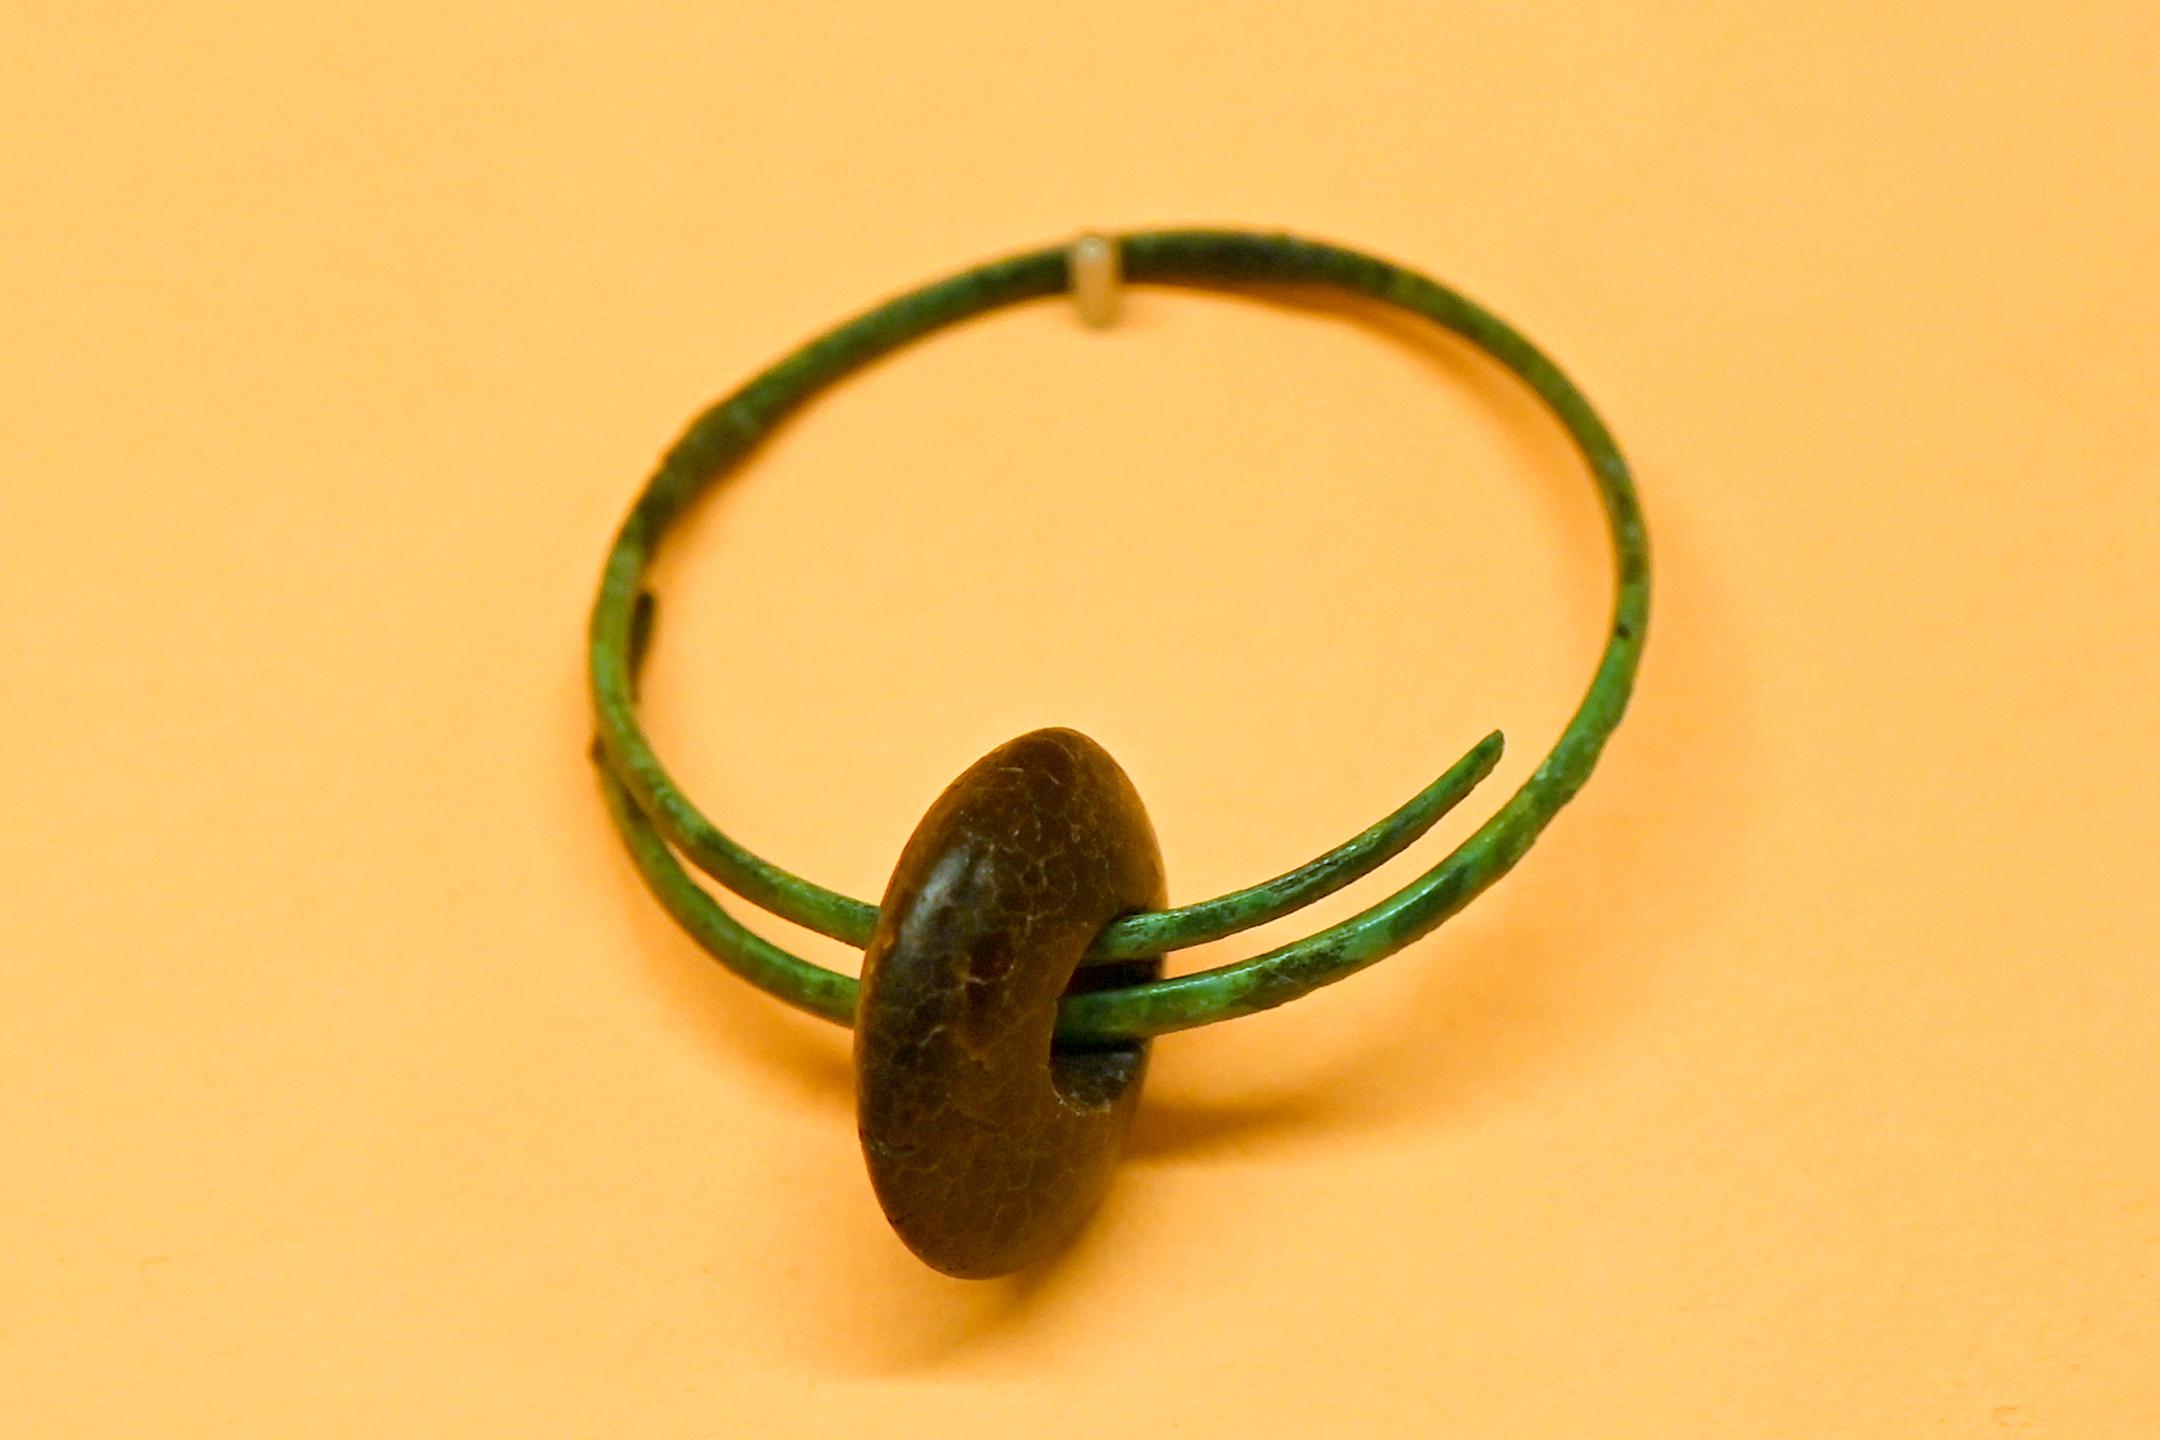 Bronzeohrring mit Perlen aus Bernstein und Glas, Hallstattzeit, 700 - 200 v. Chr., Bild 1/2